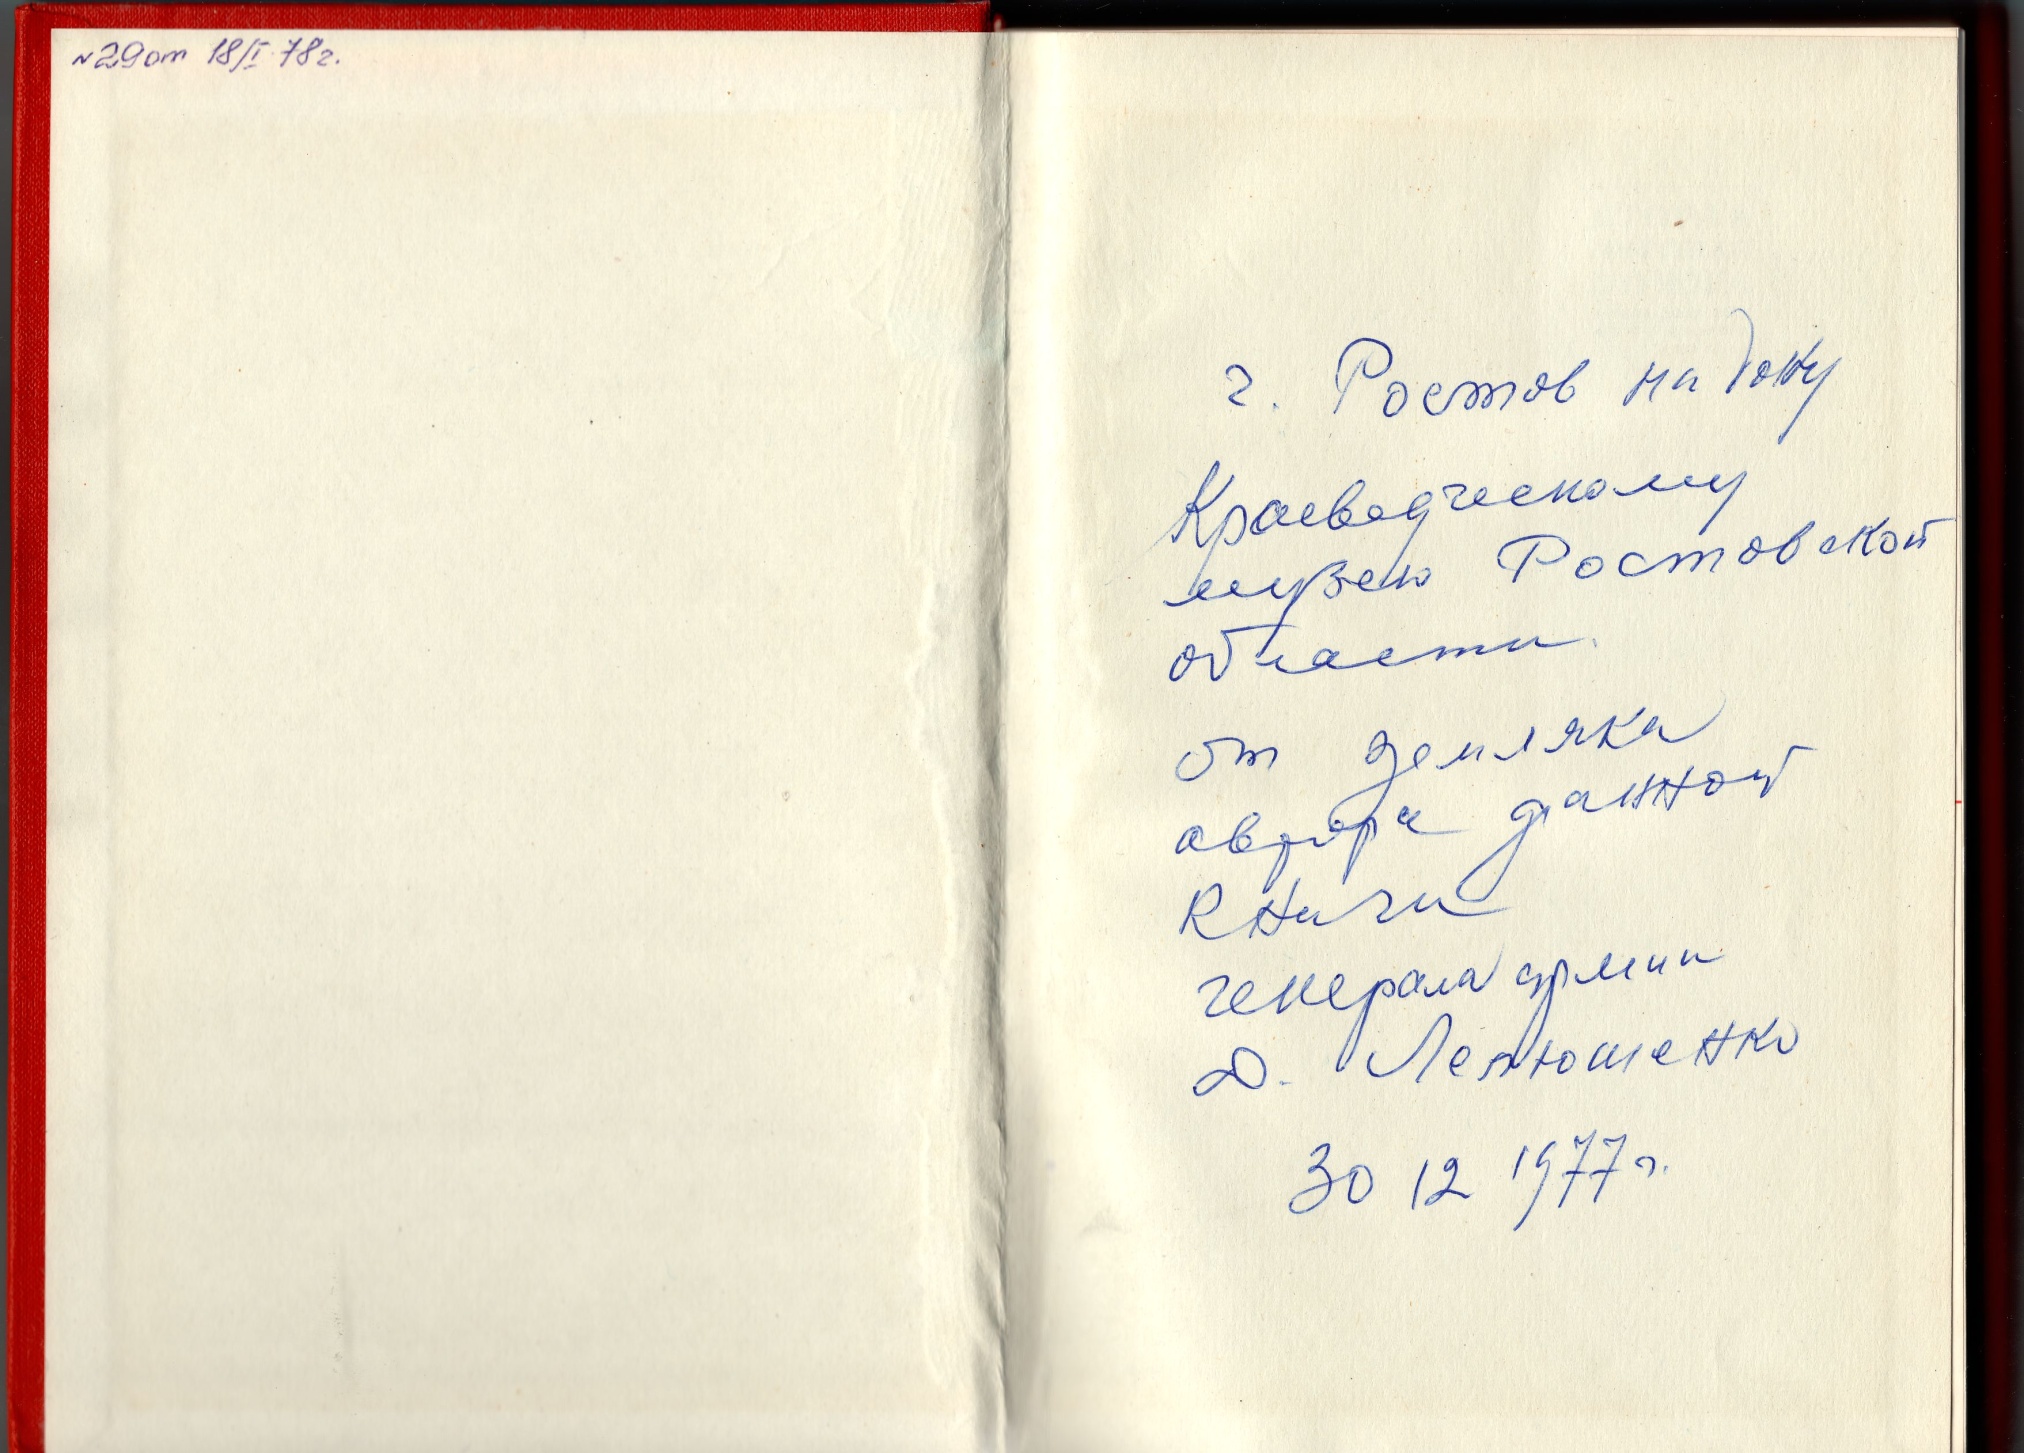 Книга «Москва-Сталинград-Берлин-Прага» с автографом автора генерала армии Лелюшенко Д.Д. 1977 год.